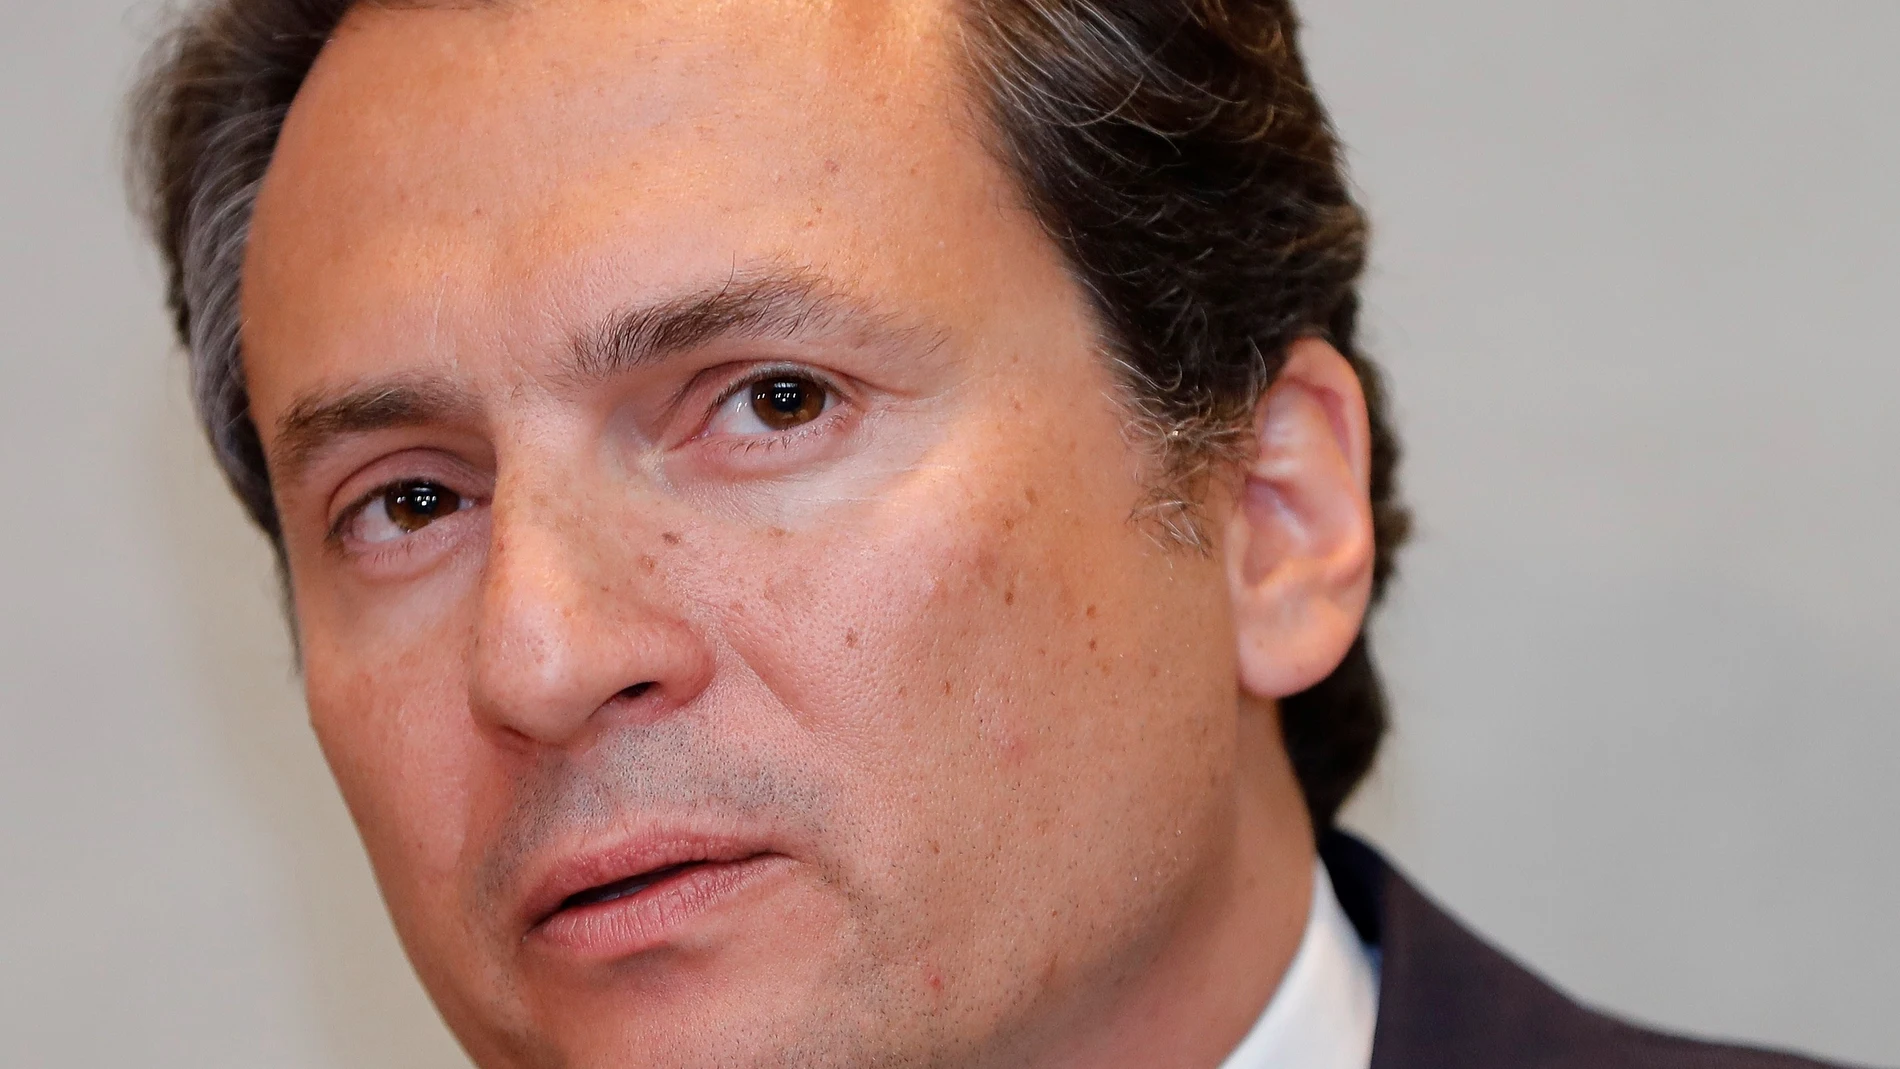 Exjefe de Pemex denuncia a expresidente Peña Nieto y a exsecretario Videgaray